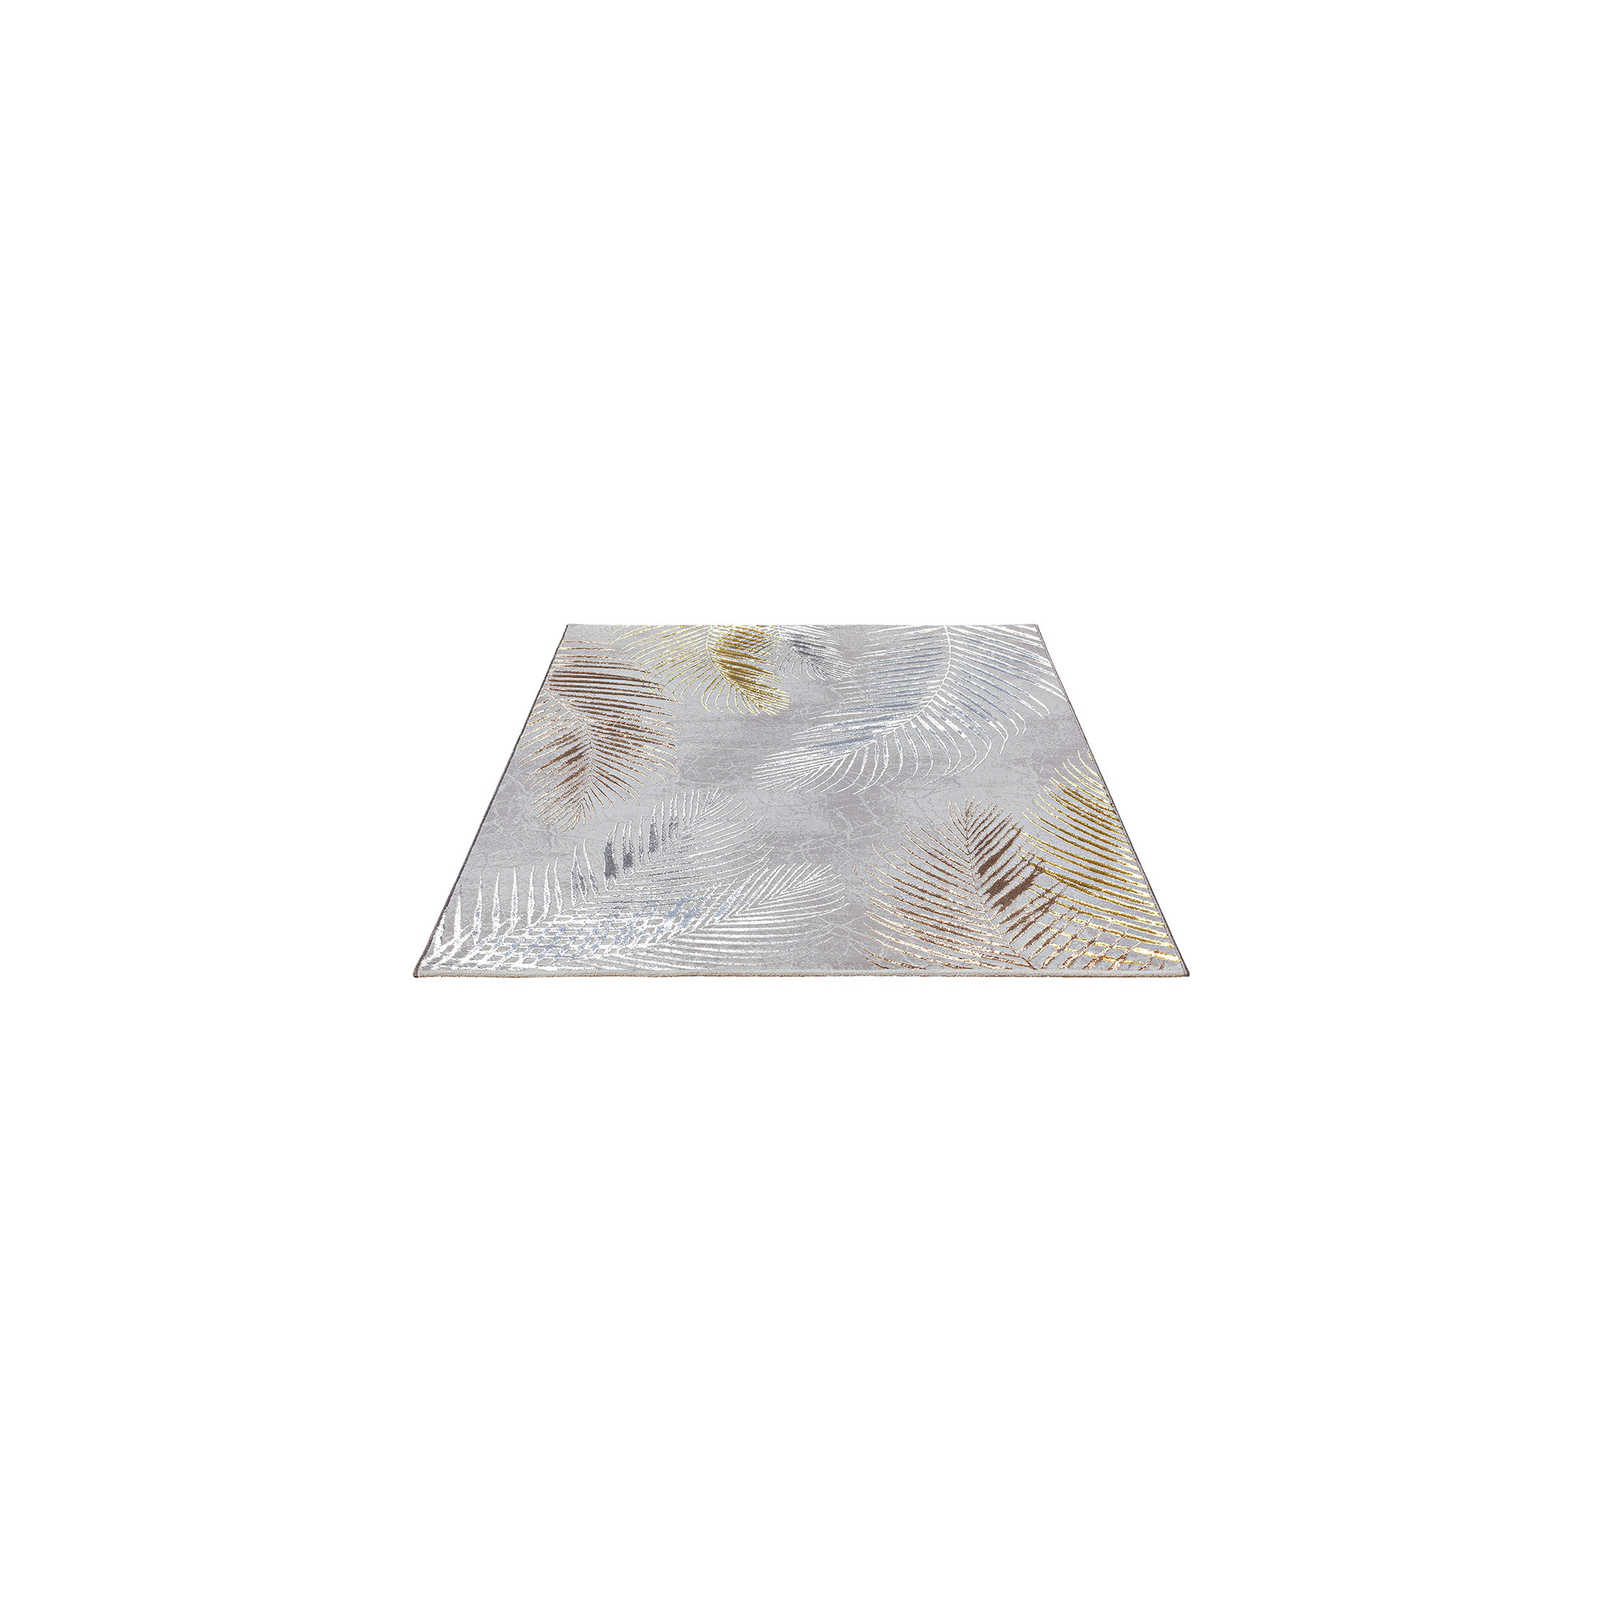 Knuffelzacht hoogpolig tapijt in grijs als loper - 170 x 120 cm
